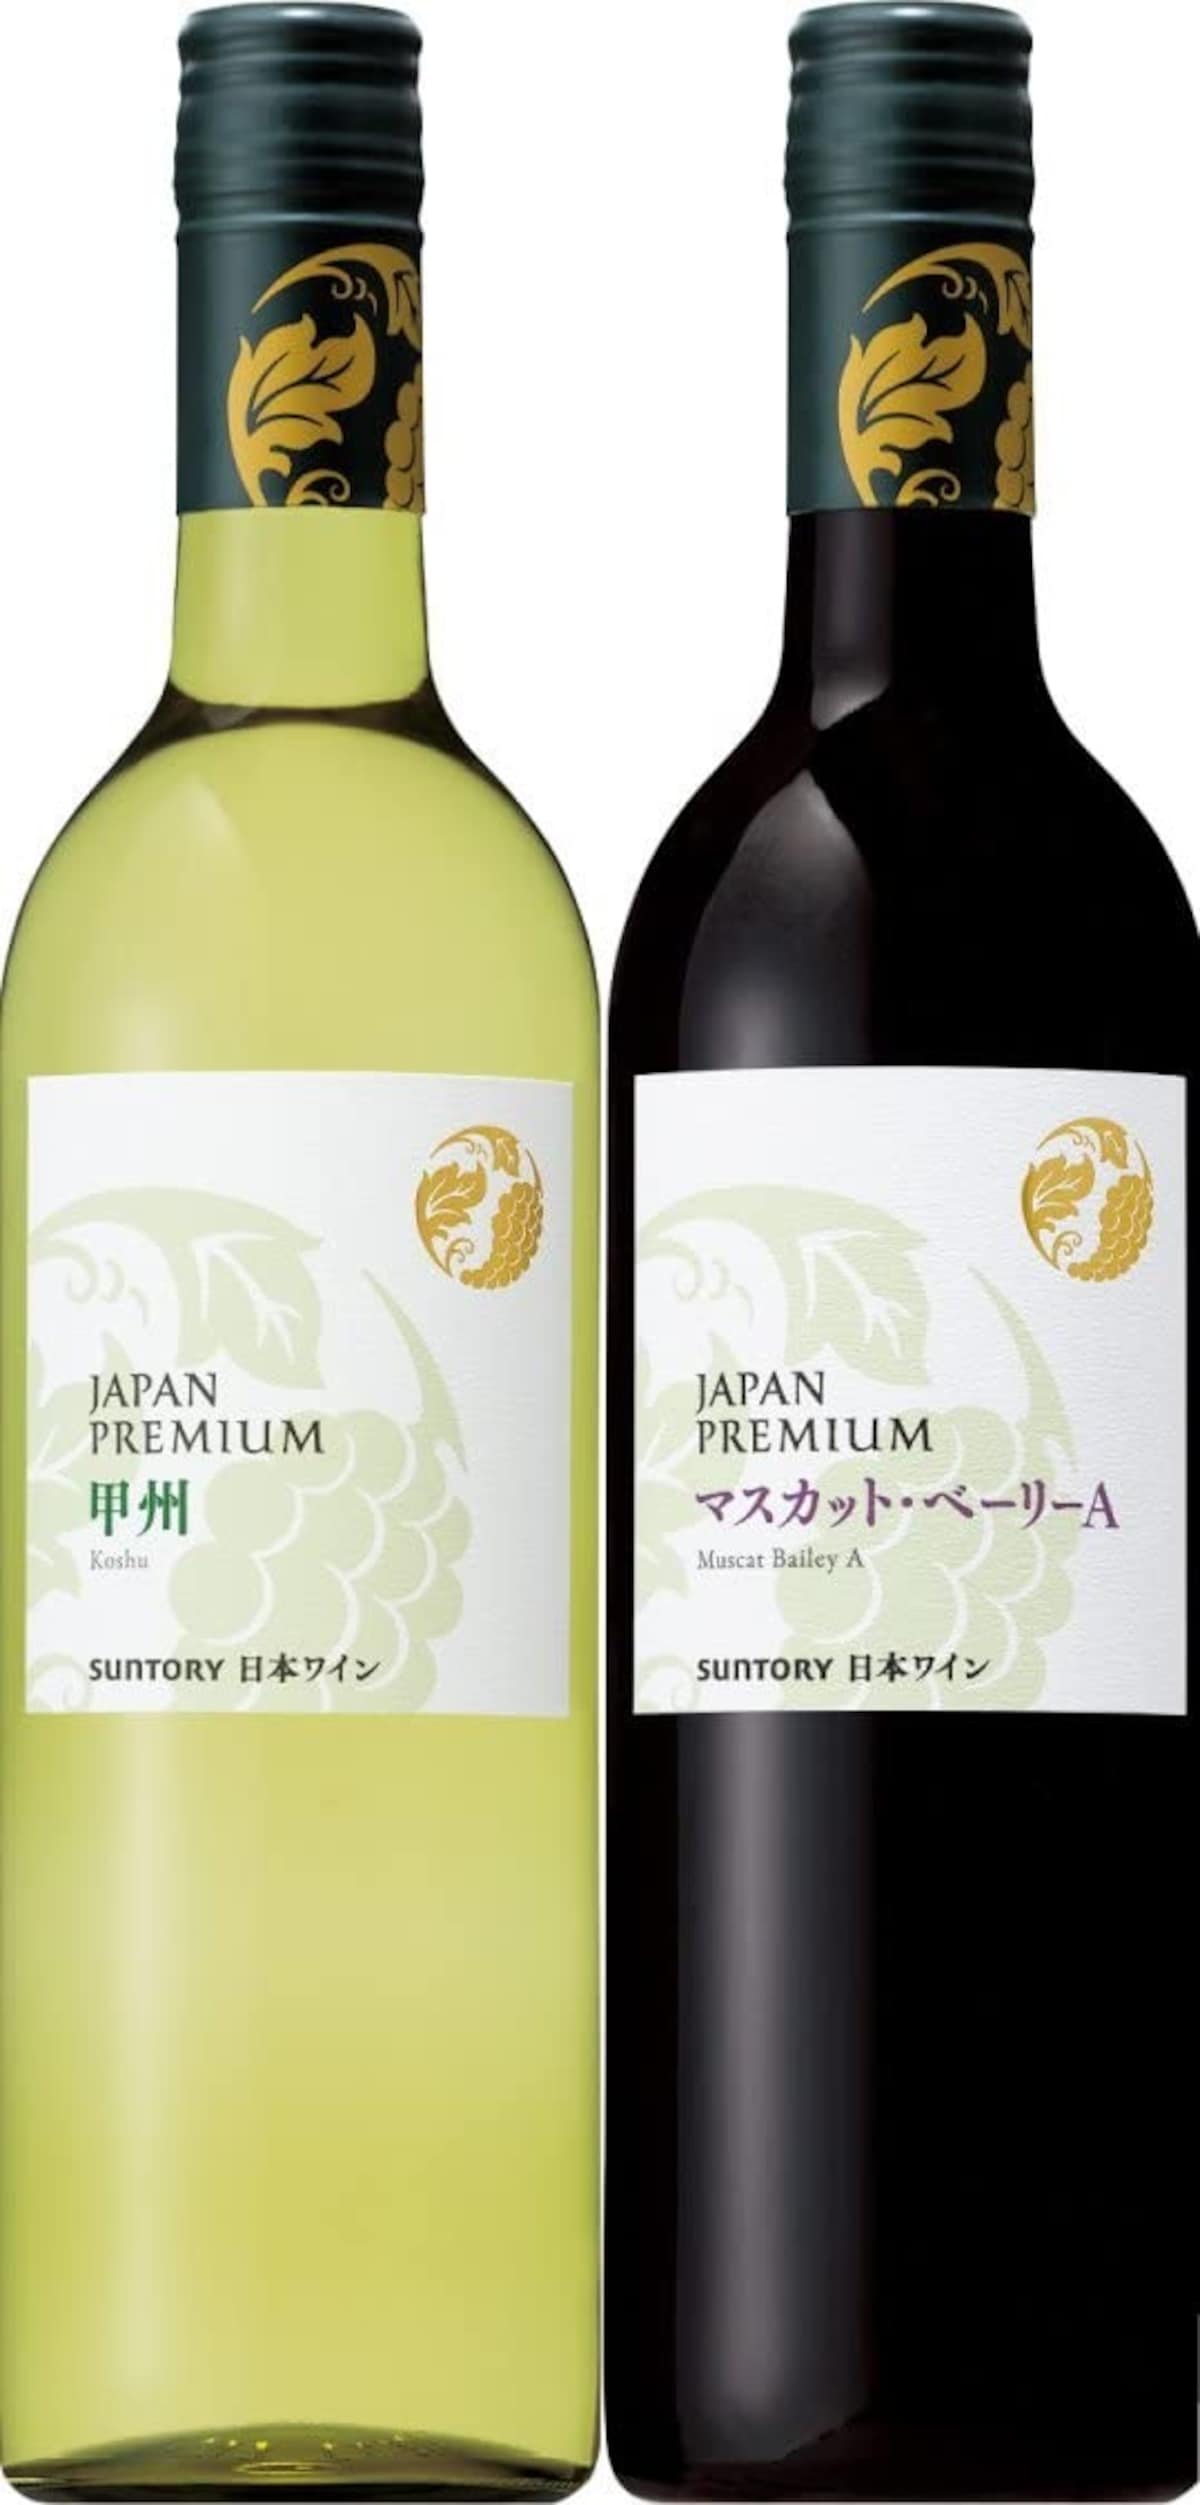  日本ワイン ジャパンプレミアム紅白2種画像2 